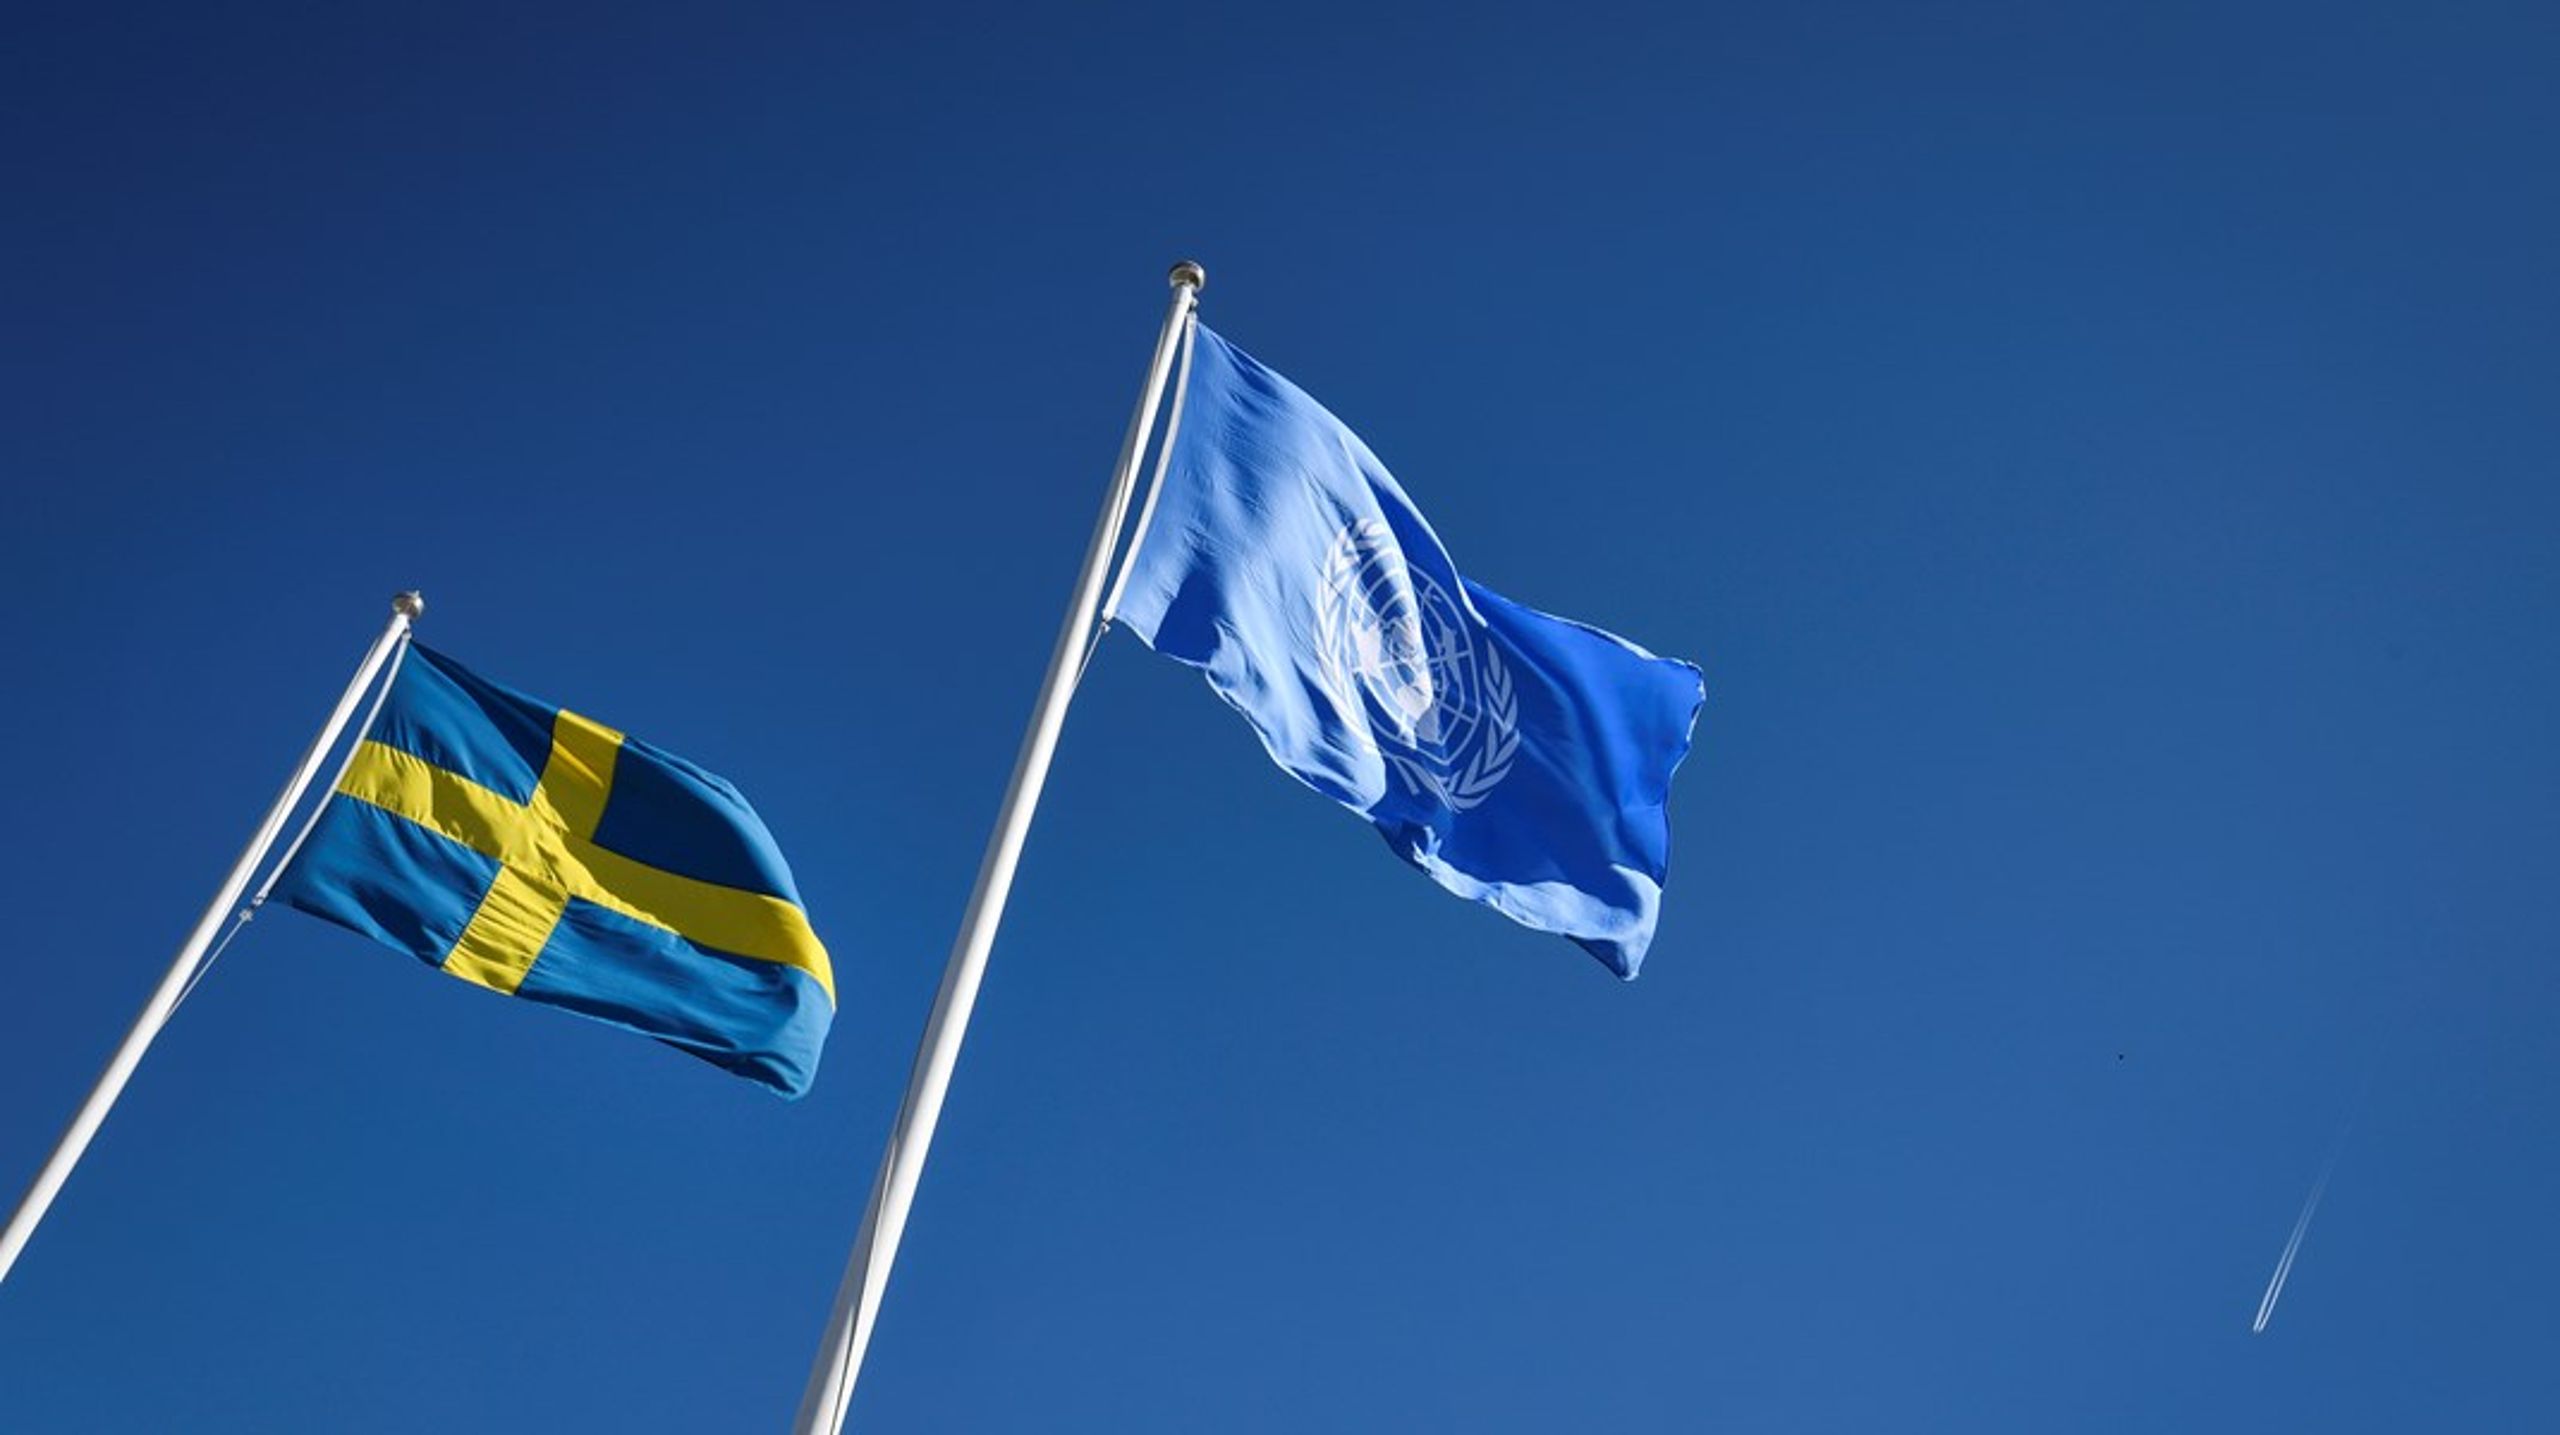 Genom att åberopa "Responsibility to Protect" kan Sverige ta en aktiv roll för att värna om de mänskliga rättigheterna, såväl i världen som på hemmaplan, skriver debattören.